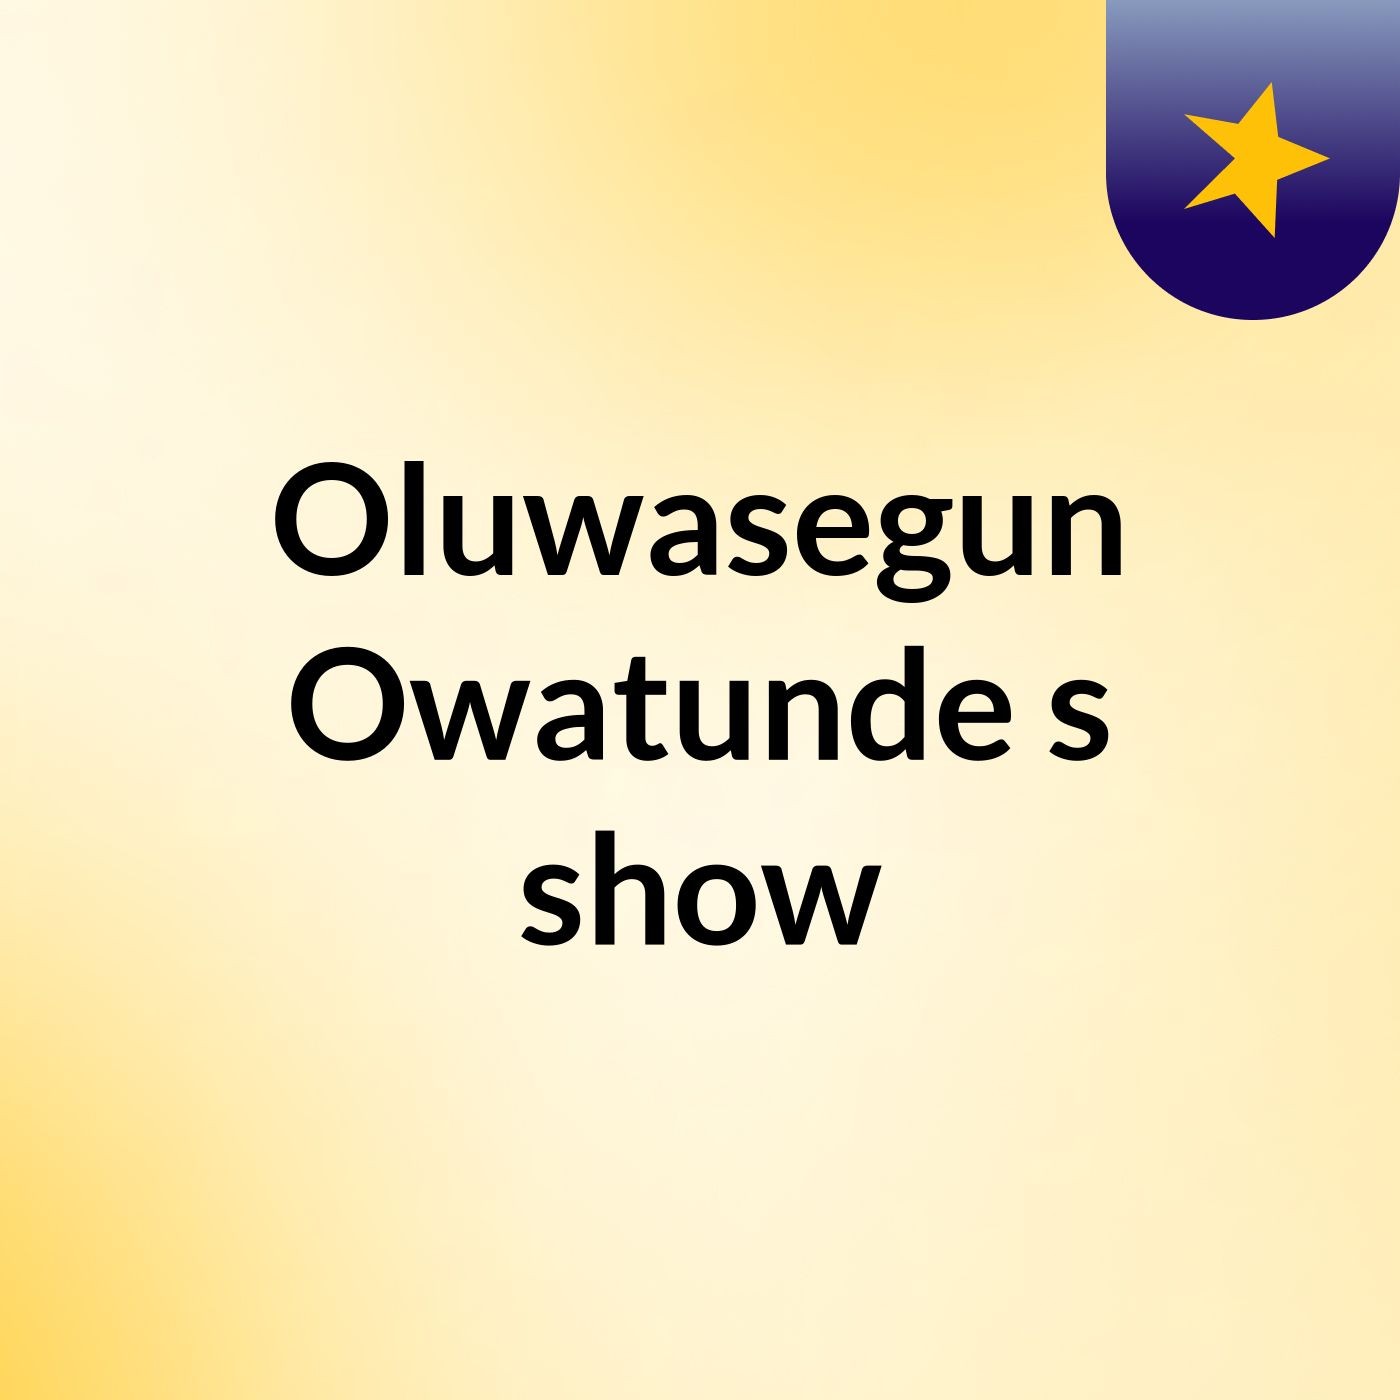 Episode 12 - Oluwasegun Owatunde's show